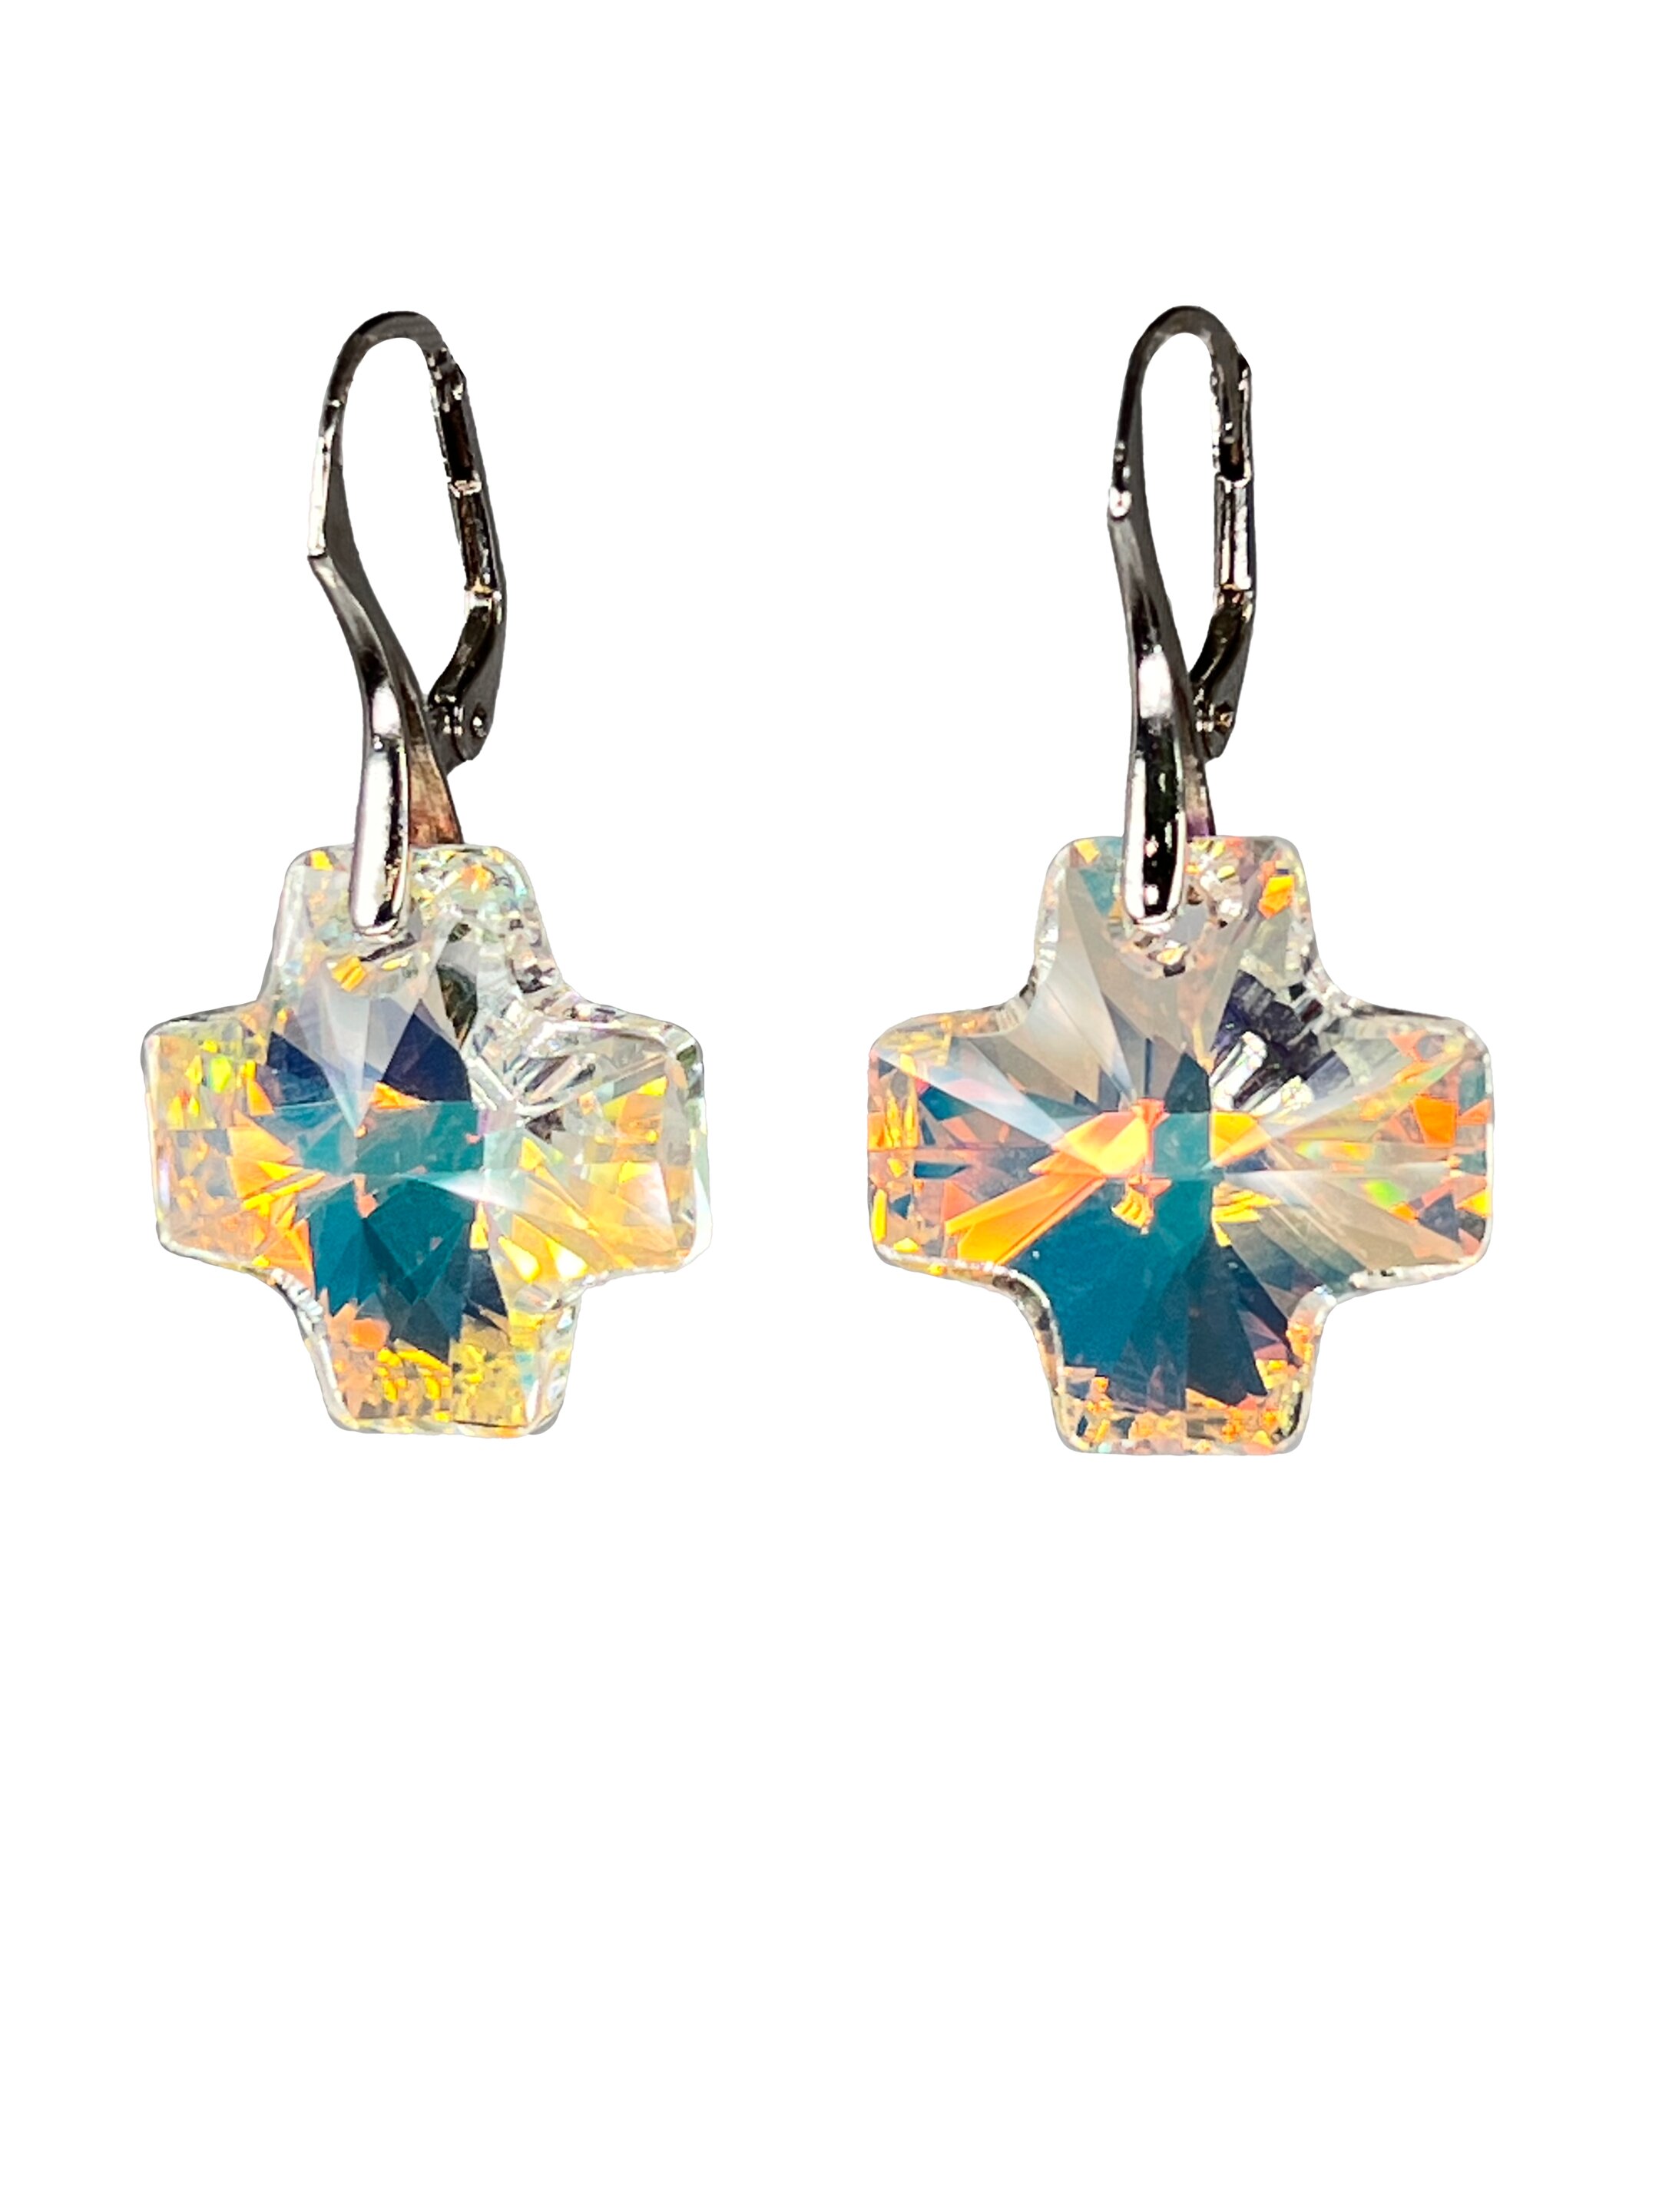 Goldene Ohrringe mit AB-Kristallen in Form von Kreuzen